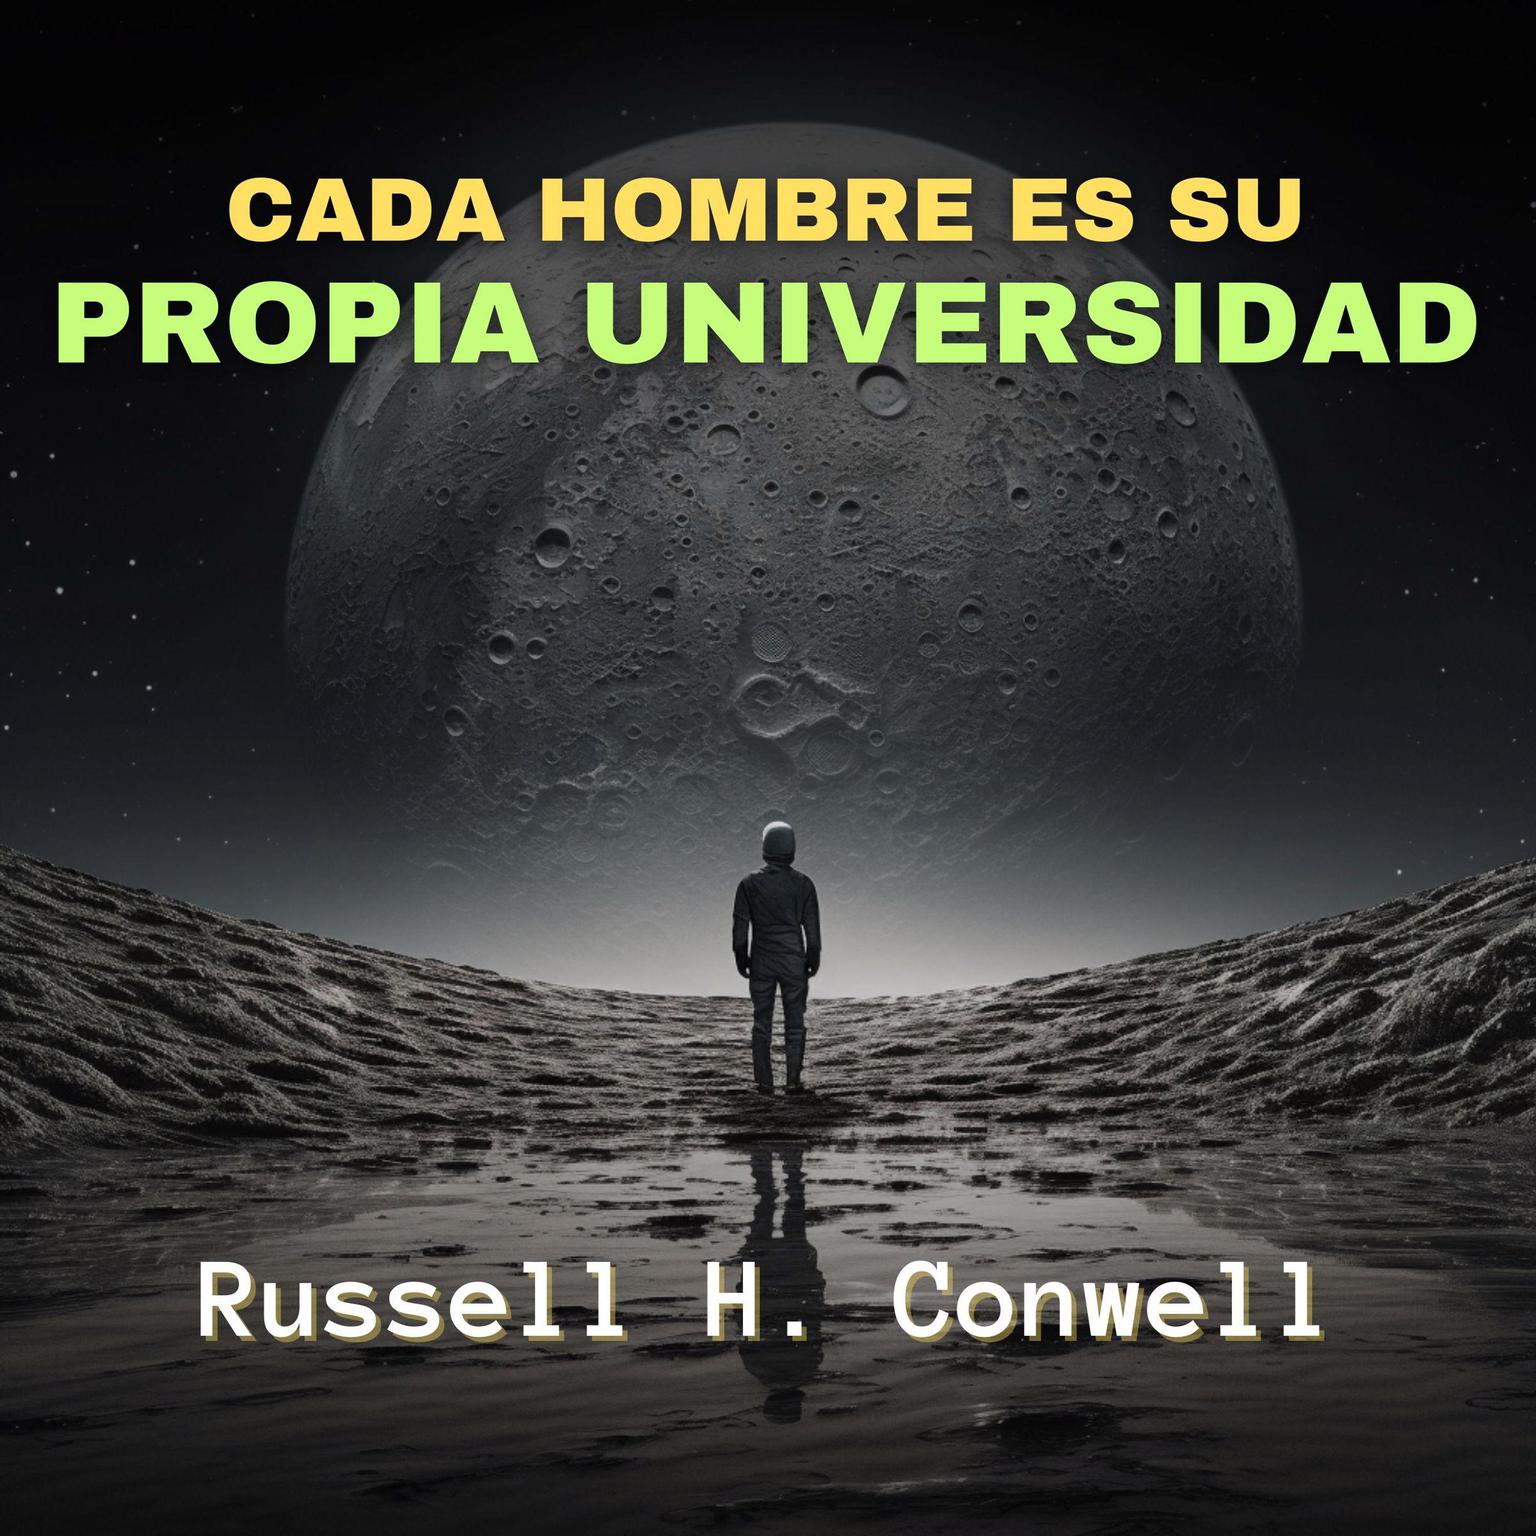 Cada Hombre es su Propia Universidad Audiobook, by Russell H. Conwell